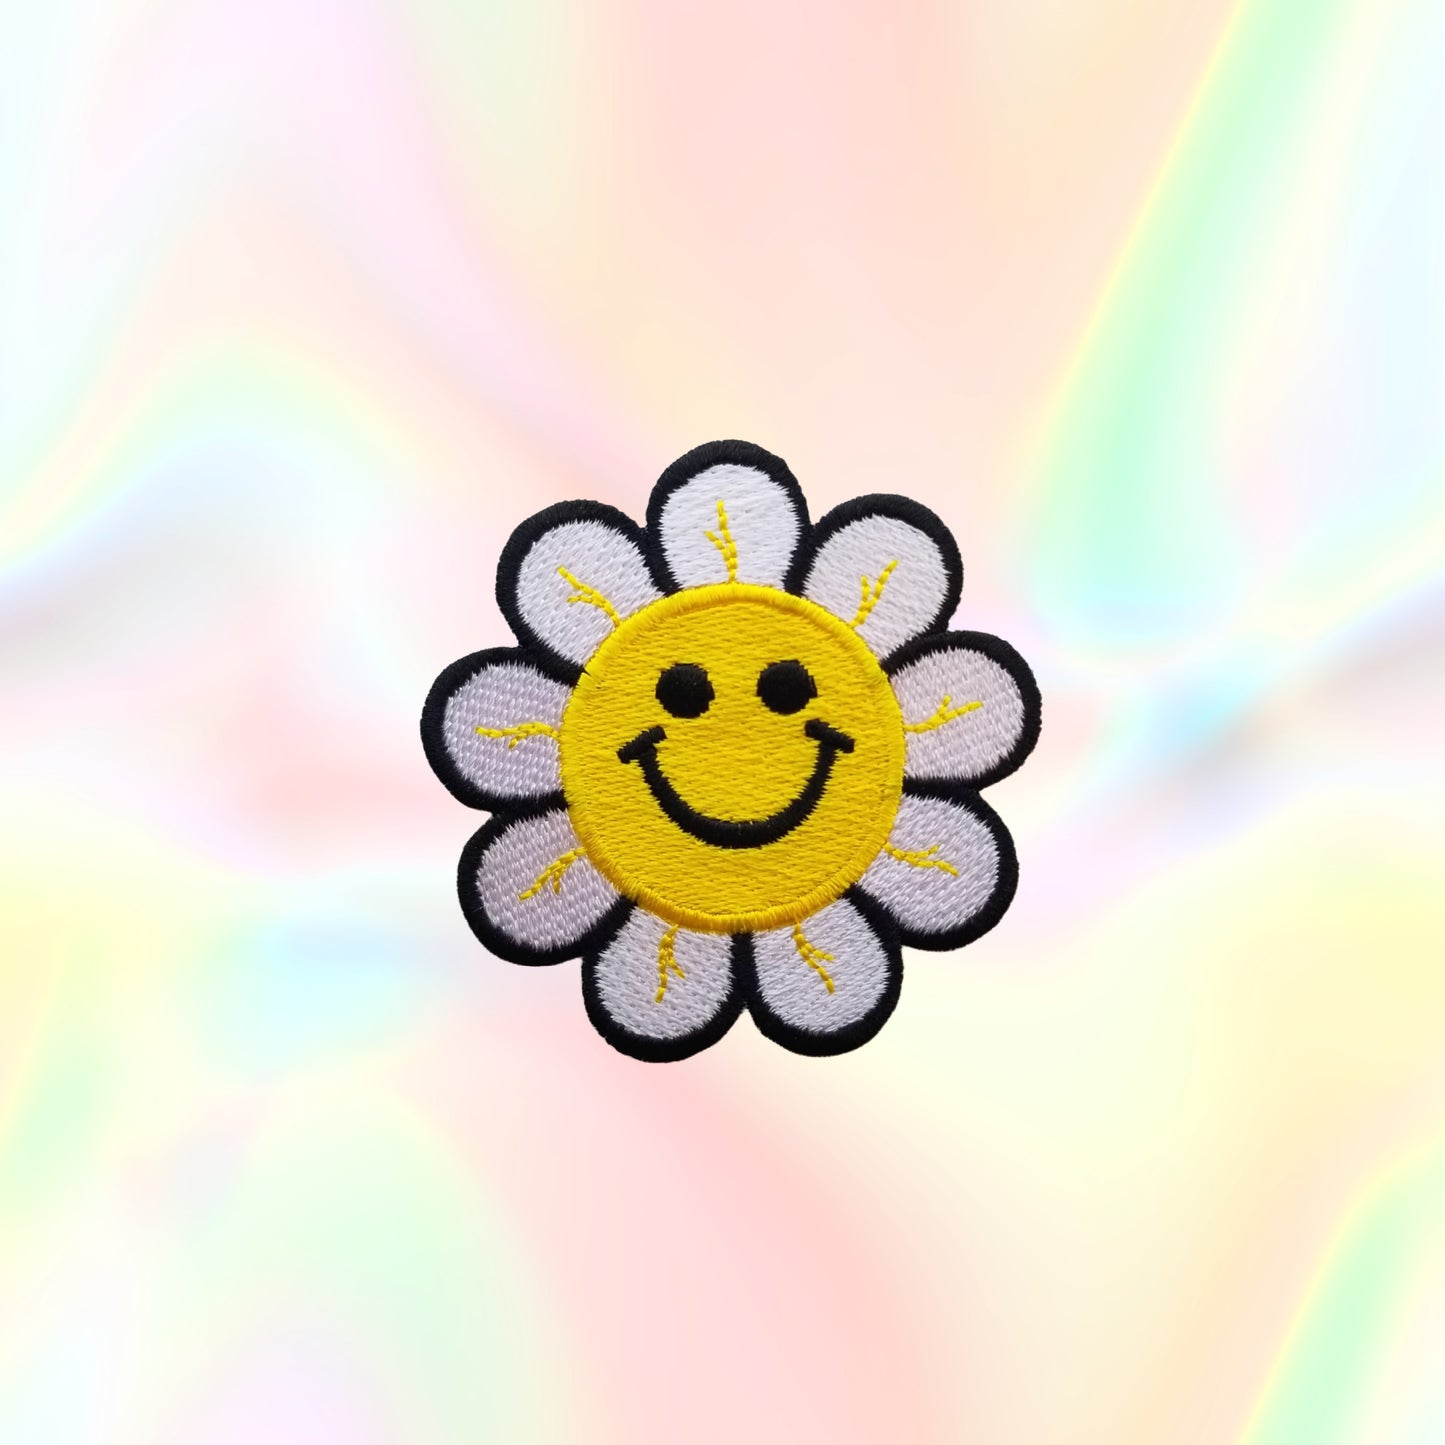 Happy Flower